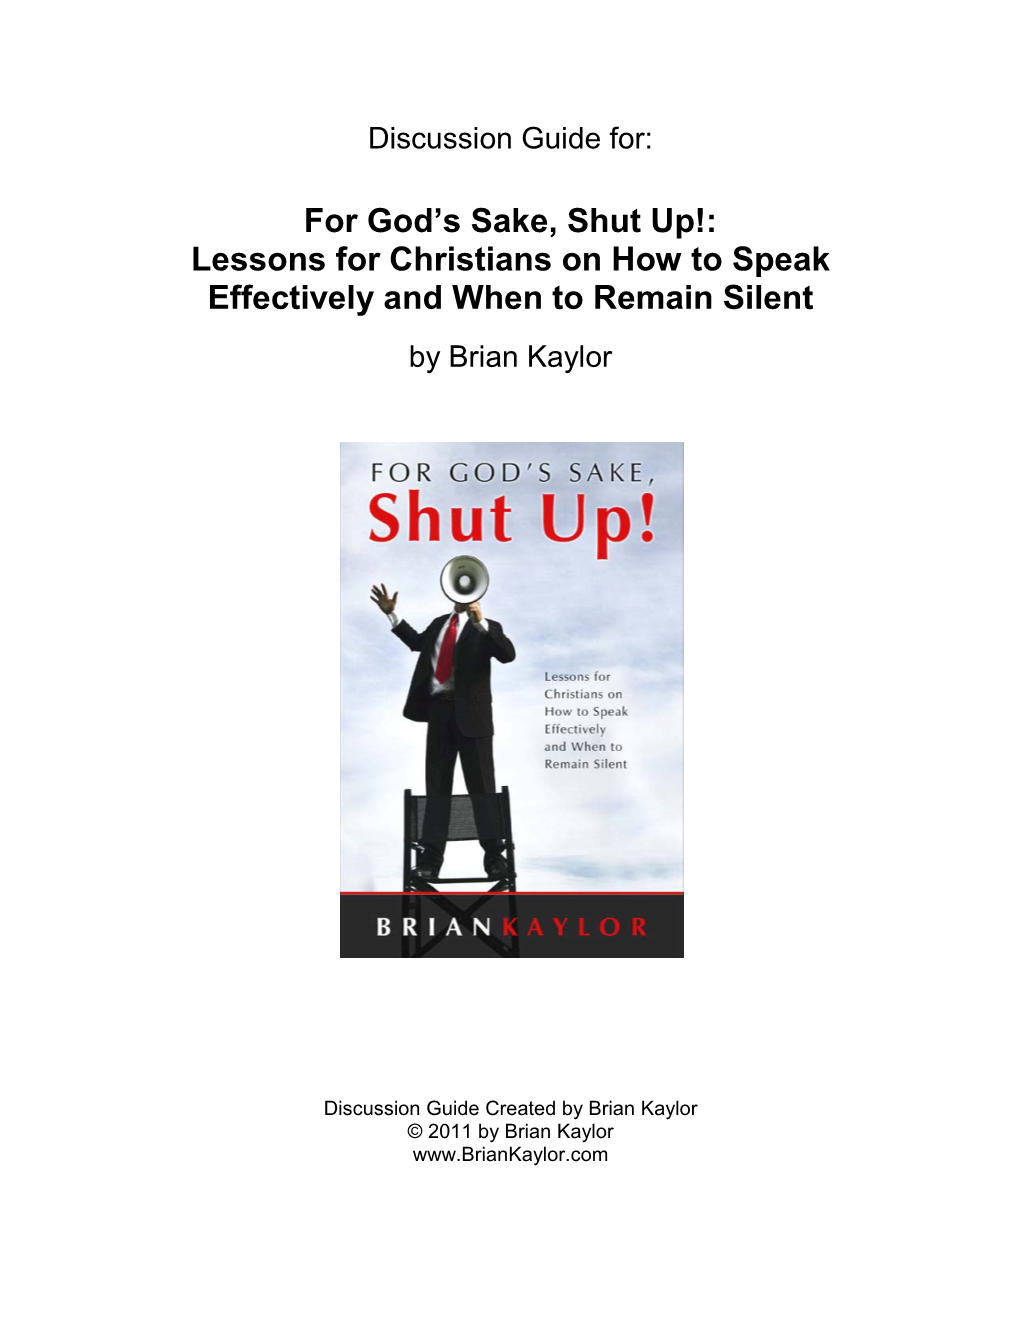 For God's Sake, Shut Up!: Lessons for Christians on How to Speak